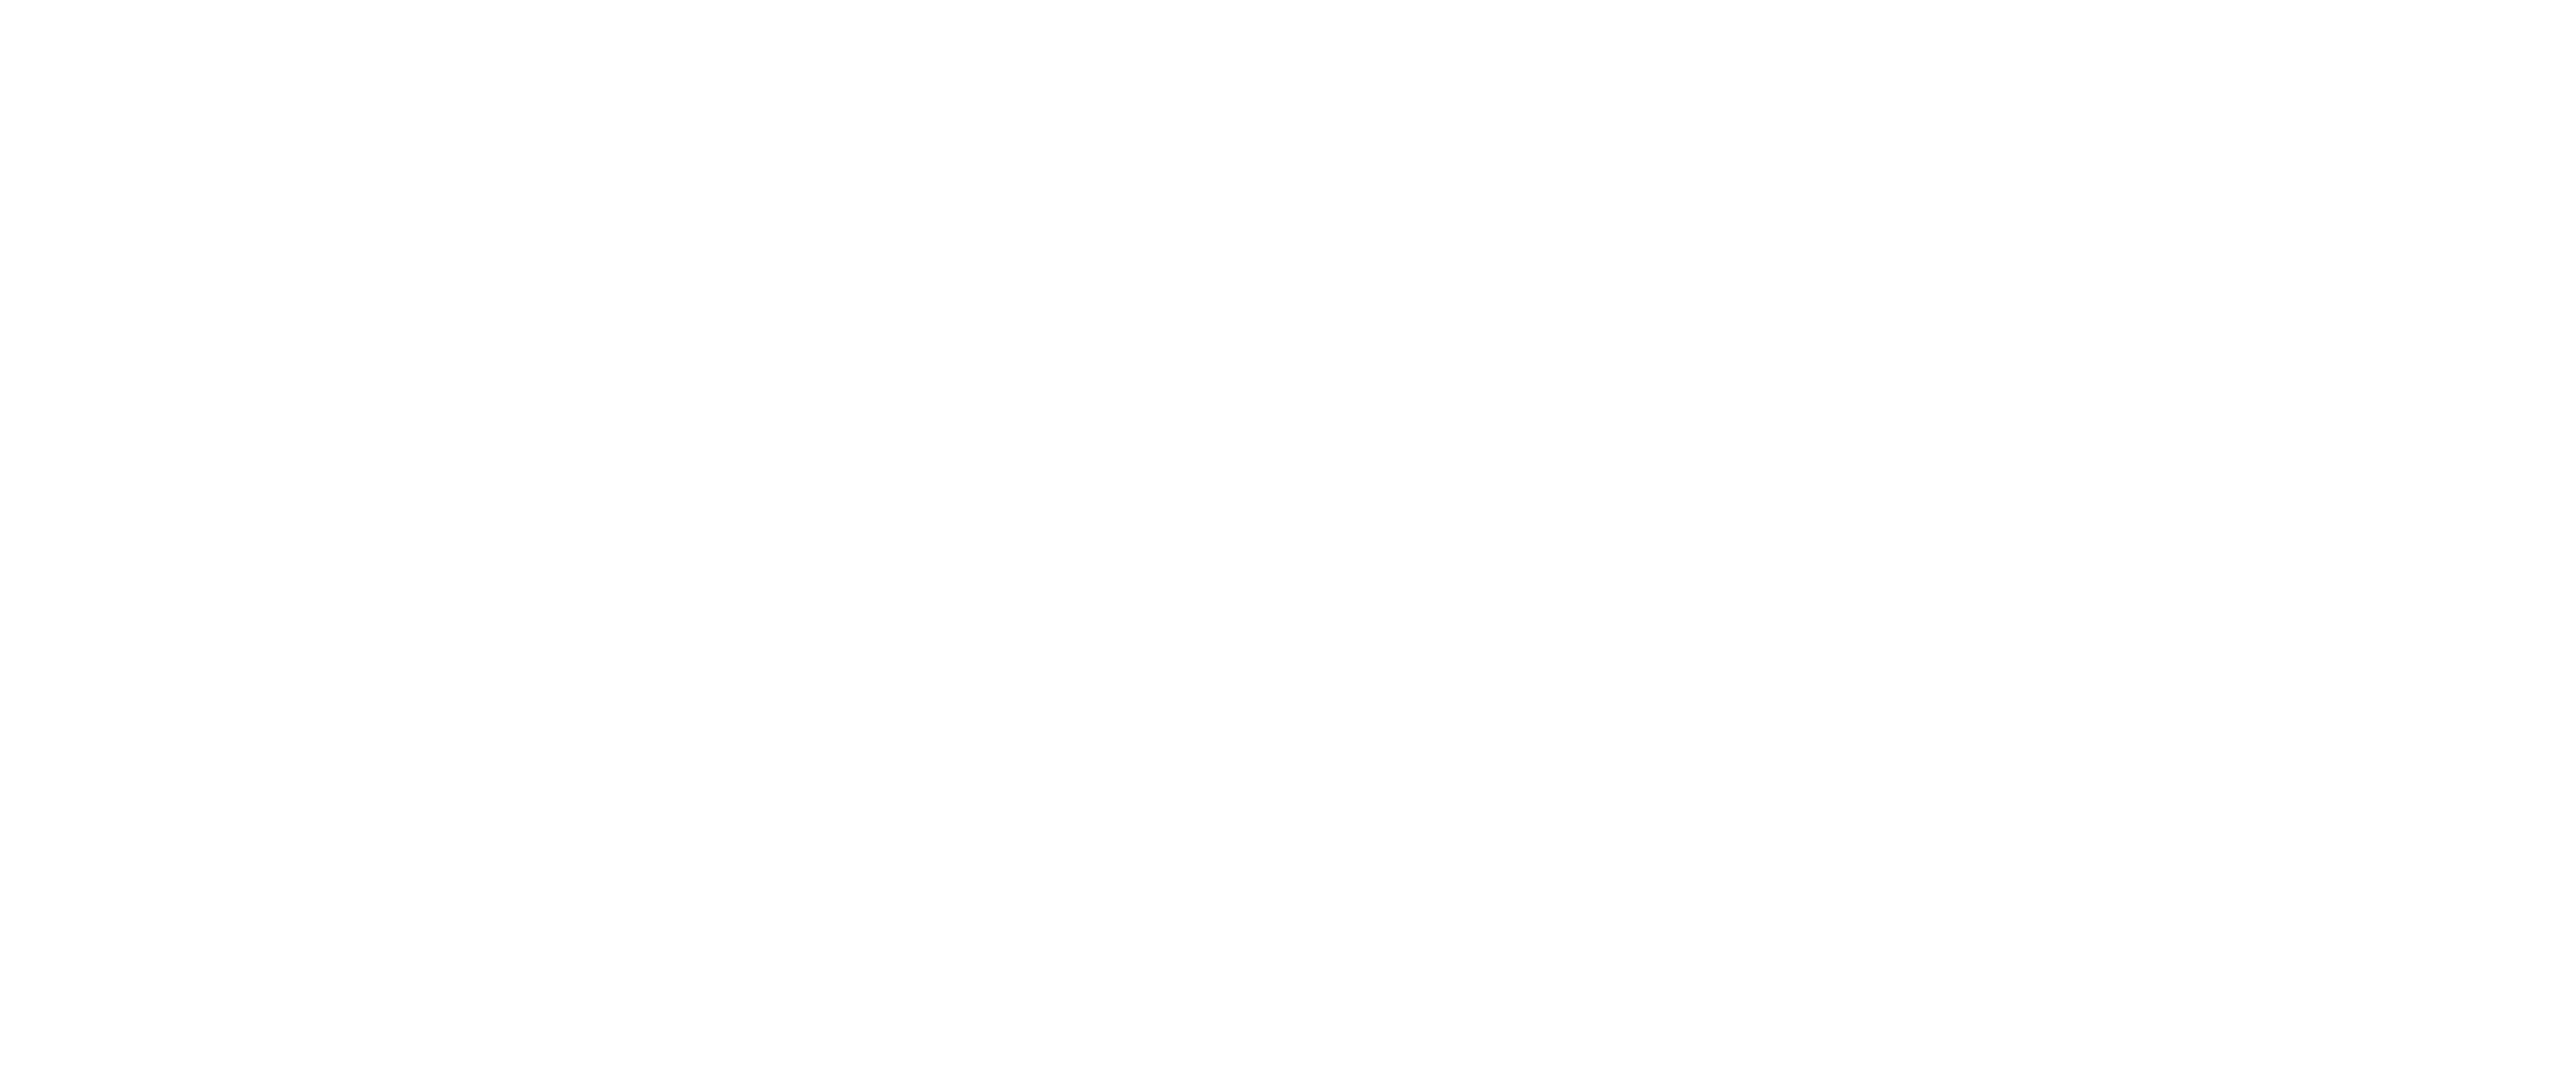 University of California, Irvine Malaria Initiative